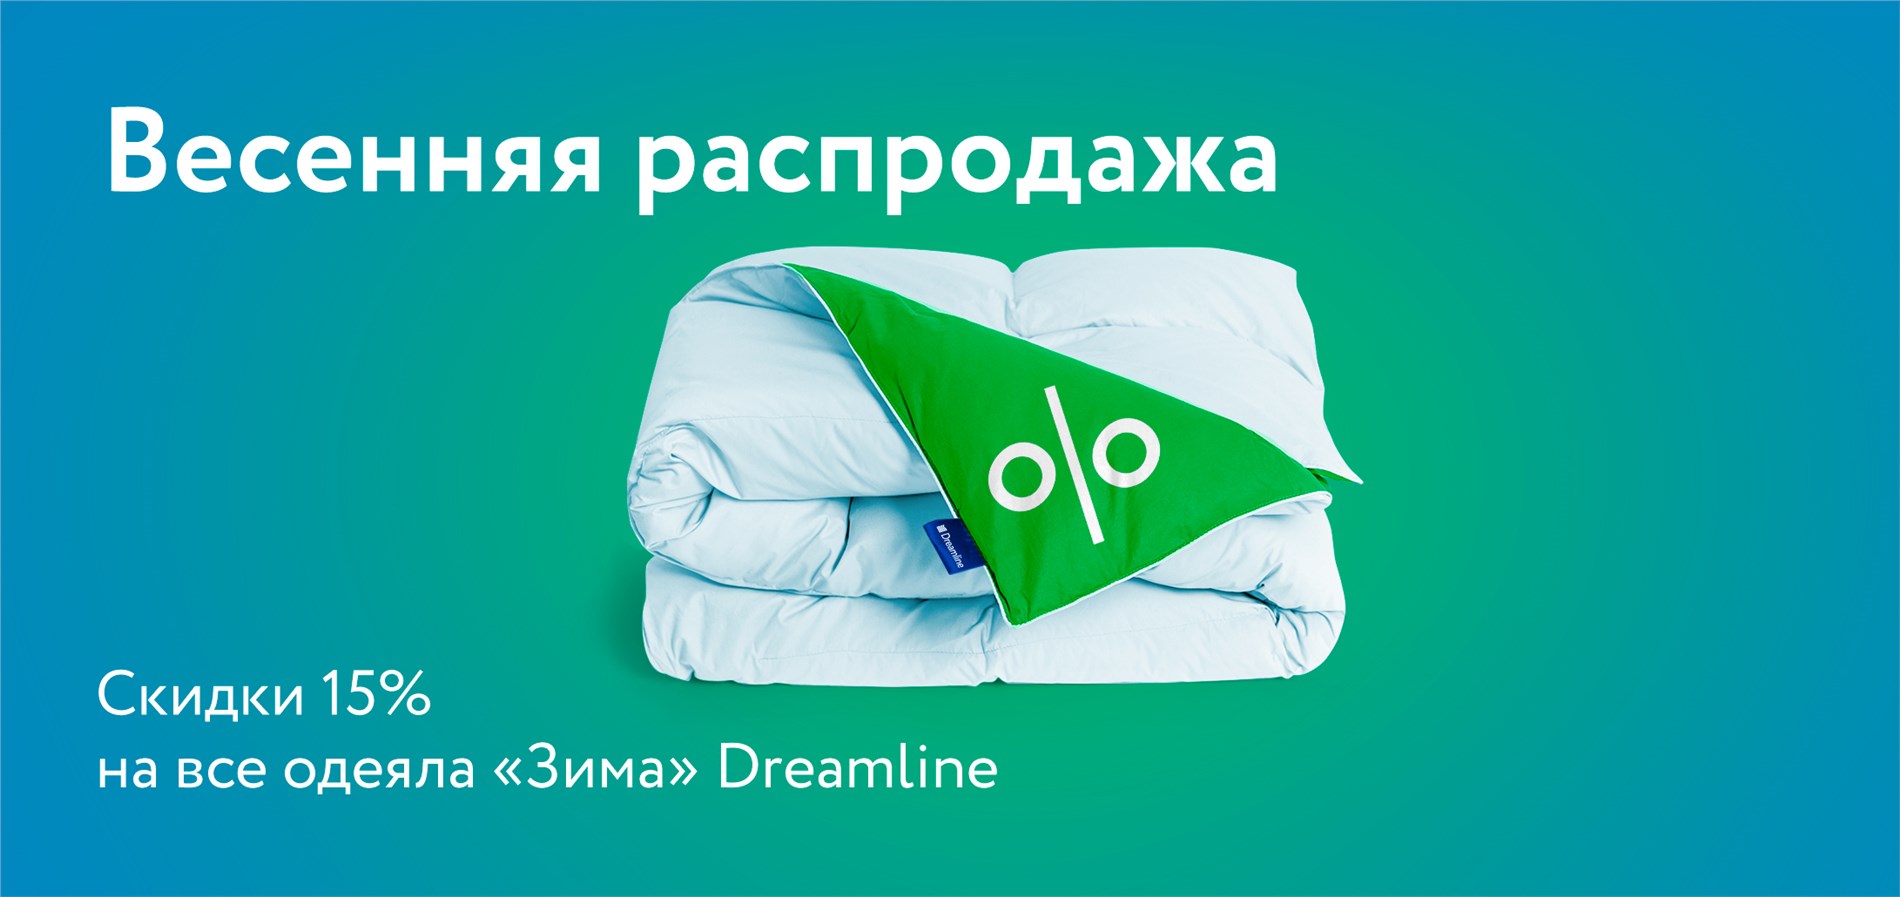 Акция «Скидка 15% на все одеяла "Зима" от Dreamline!»